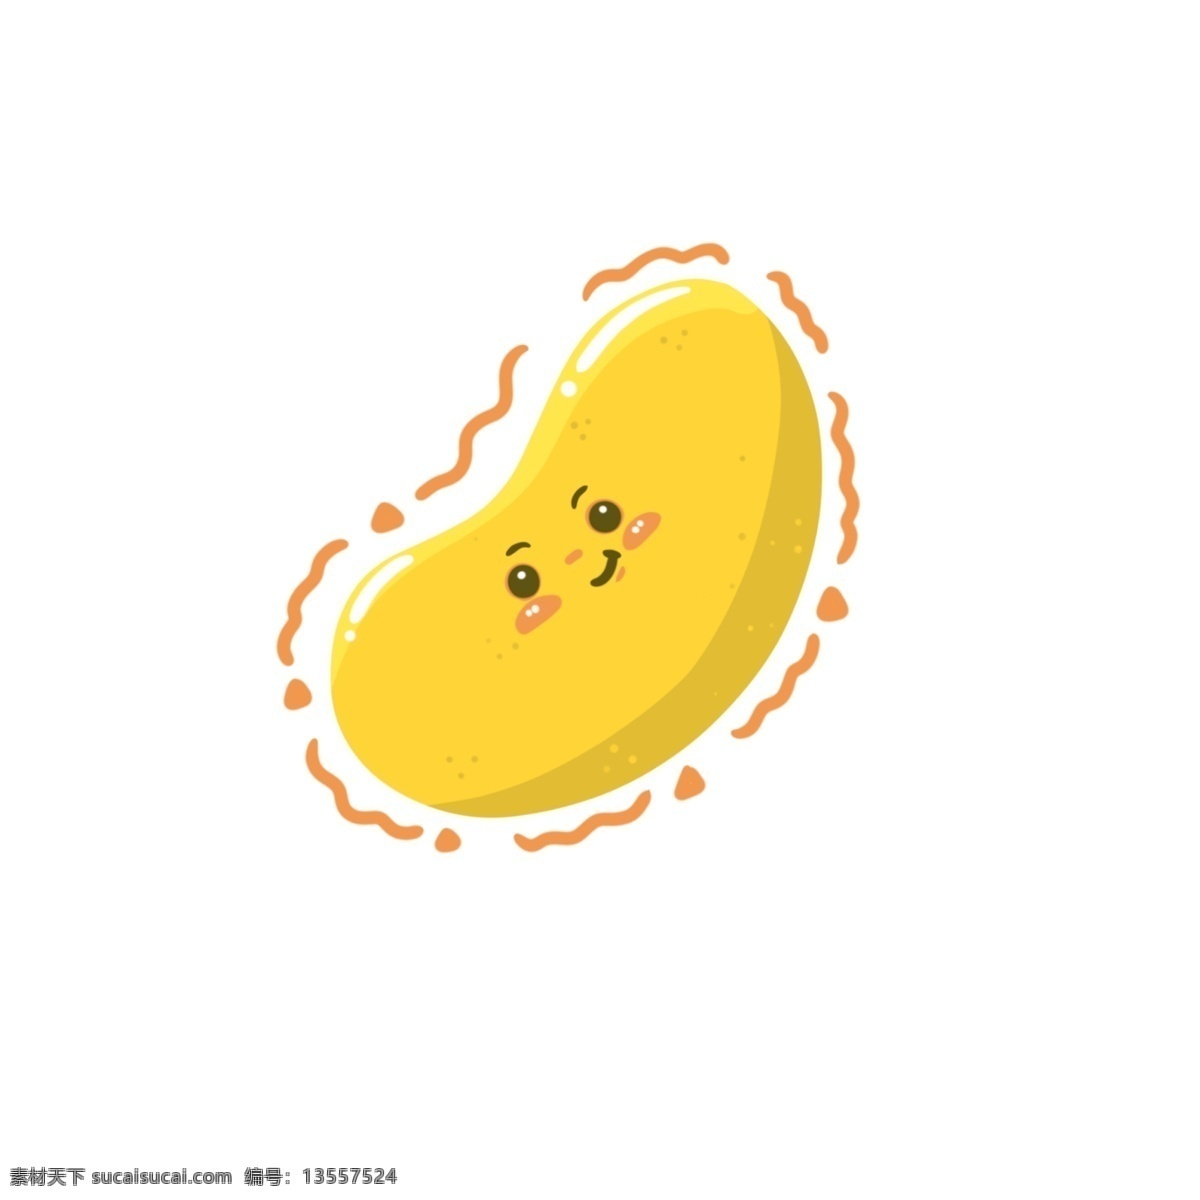 笑脸 卡通 芒果 形象 简约 水果 可爱 开心 表情